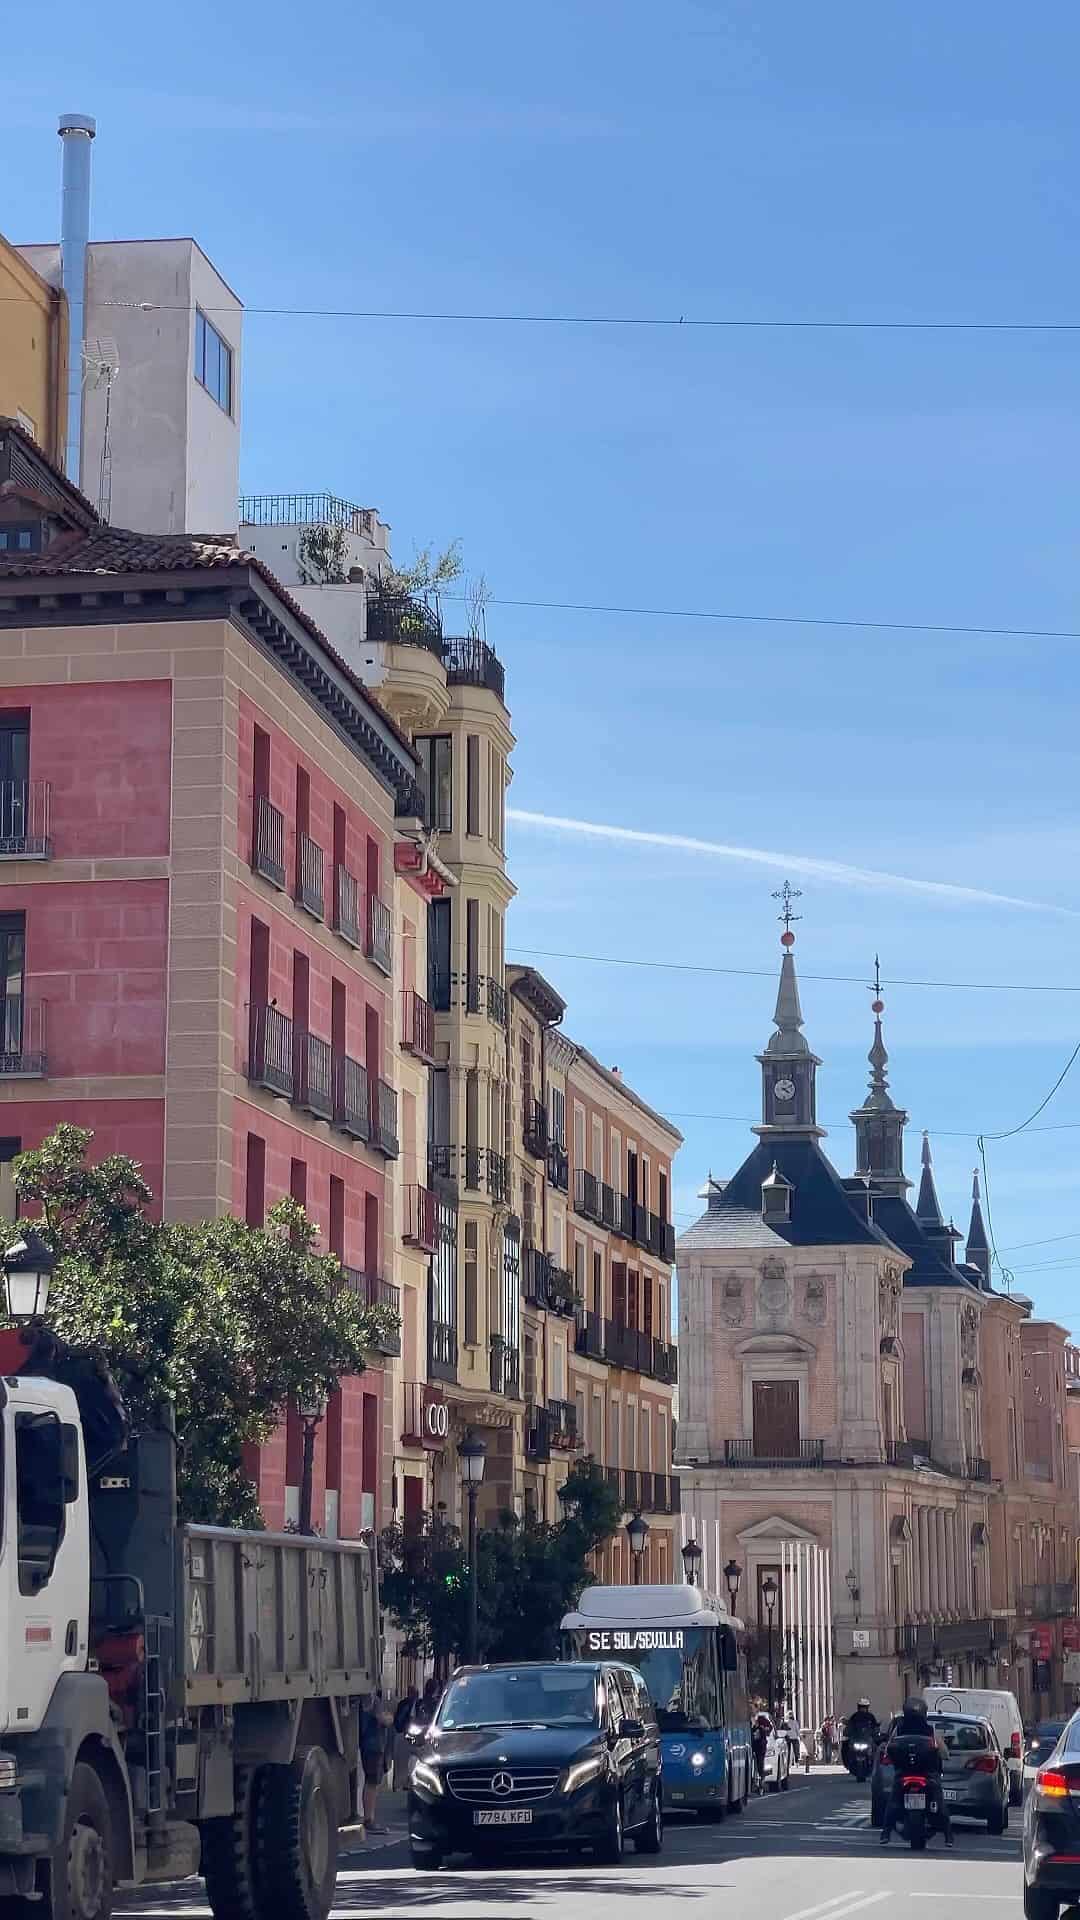 Dreamy Madrid ✨

#madrid #madridespaña #visitmadrid #prettylittletrips